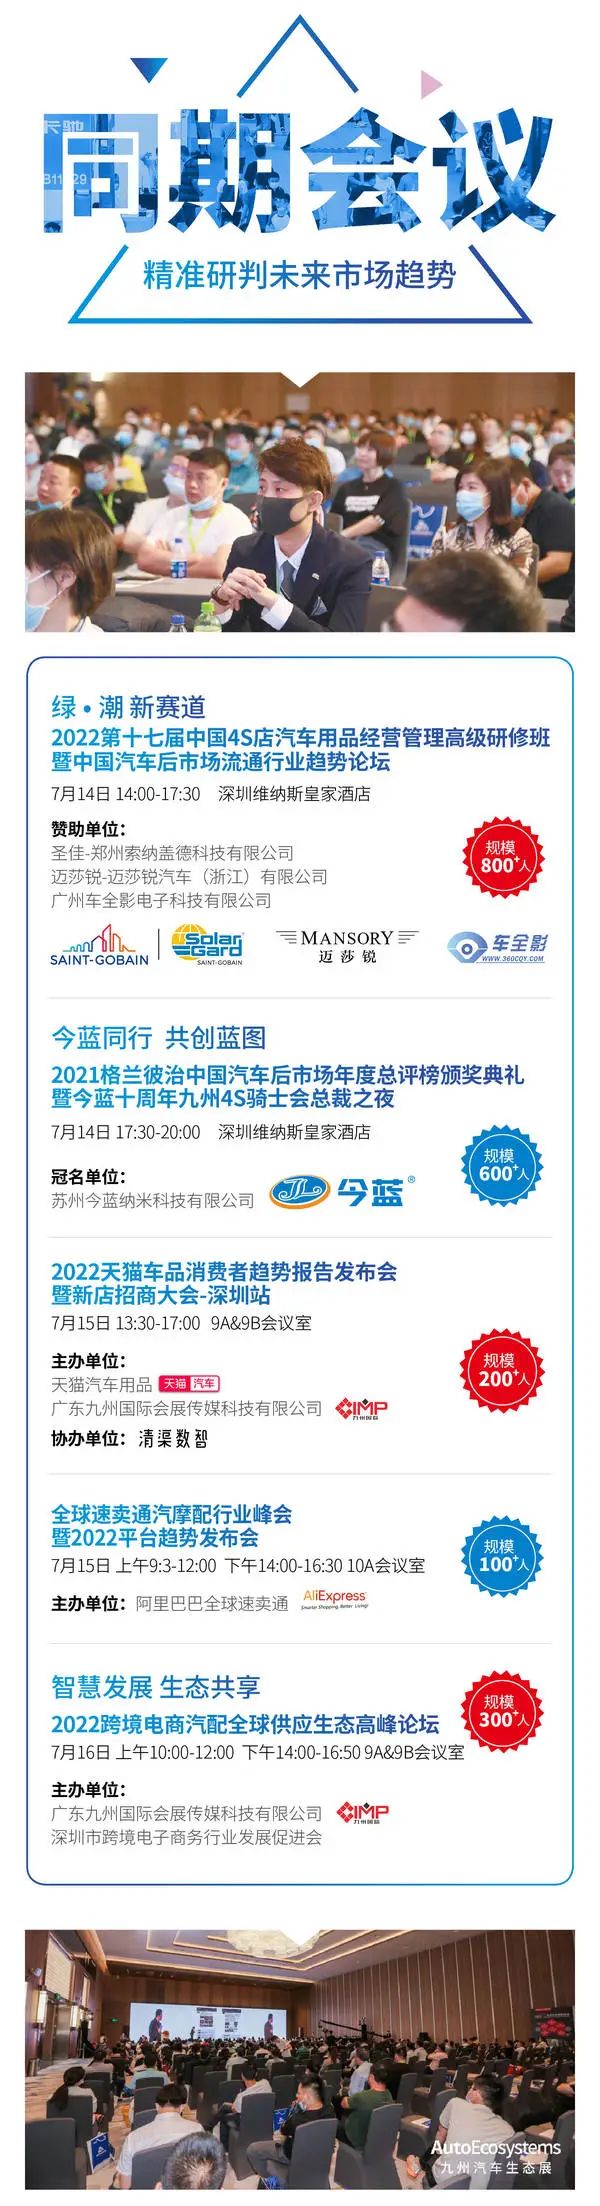 7月15-17日深圳九州汽车生态展——全行业冲业绩的黄金契机